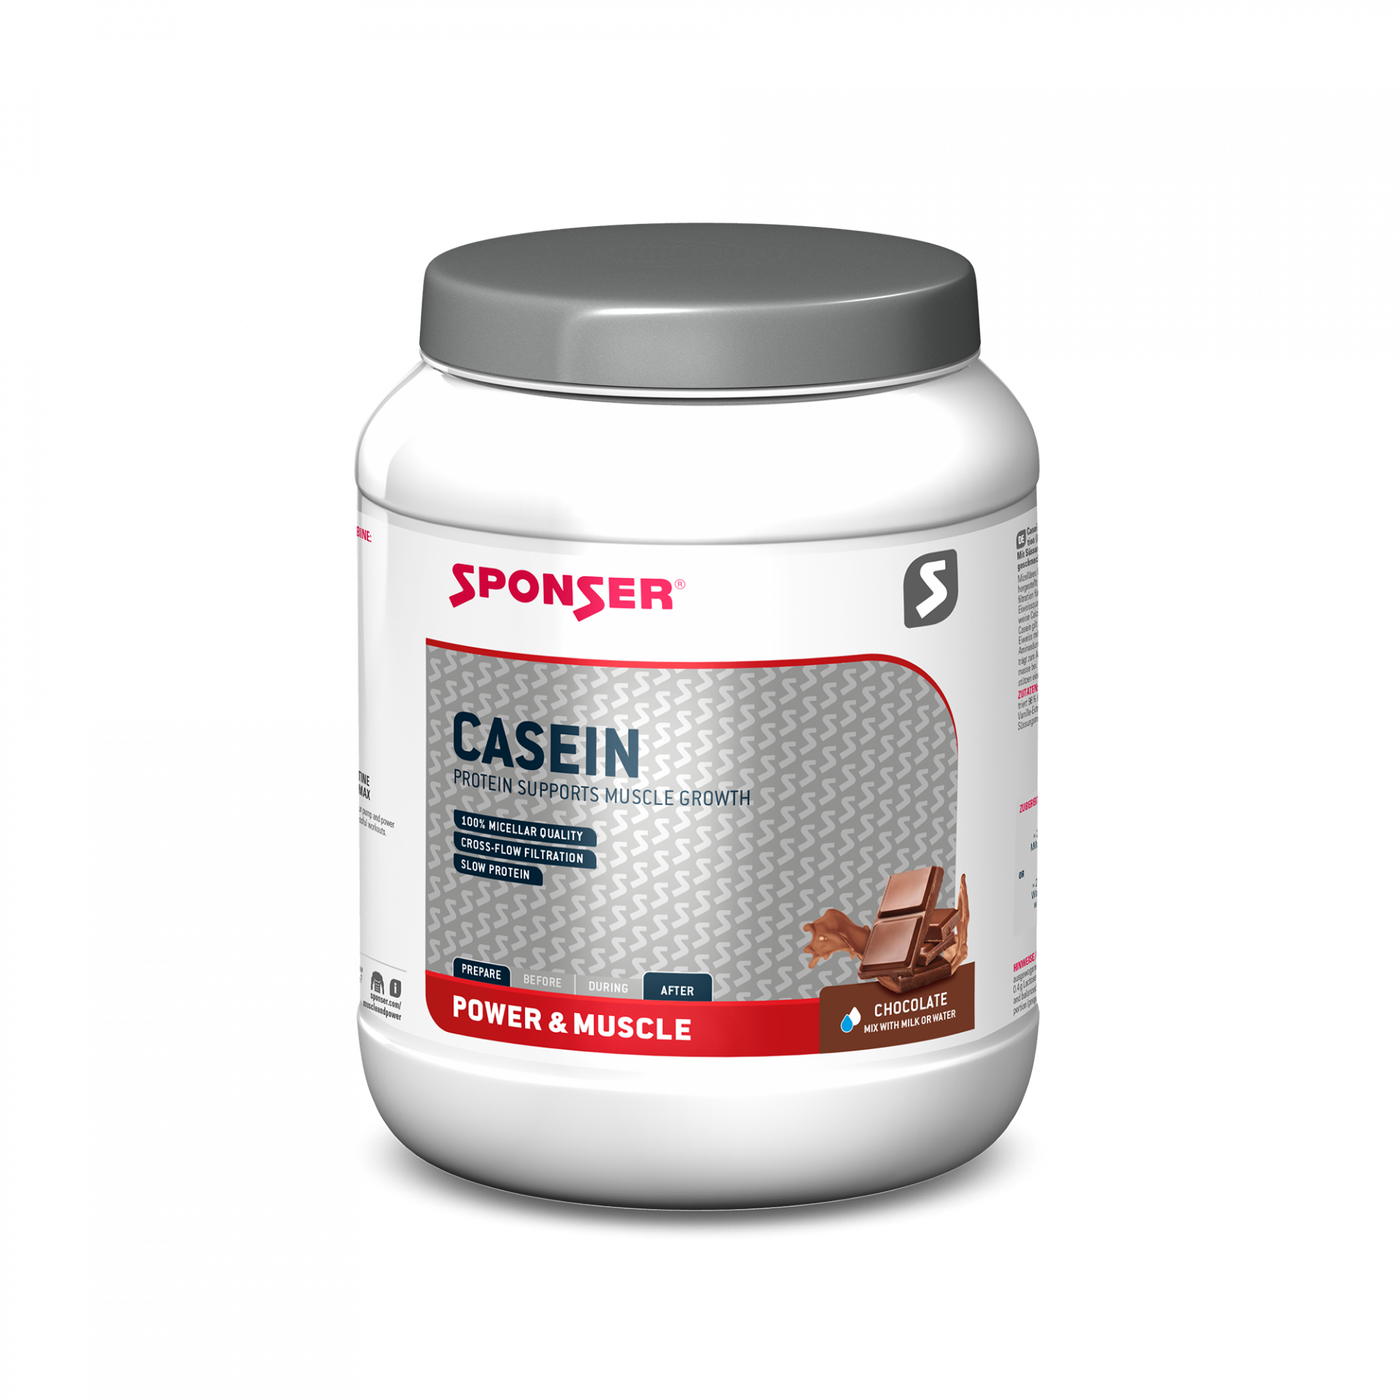 Sponser Casein Chocolate proteinpulver - 850 g